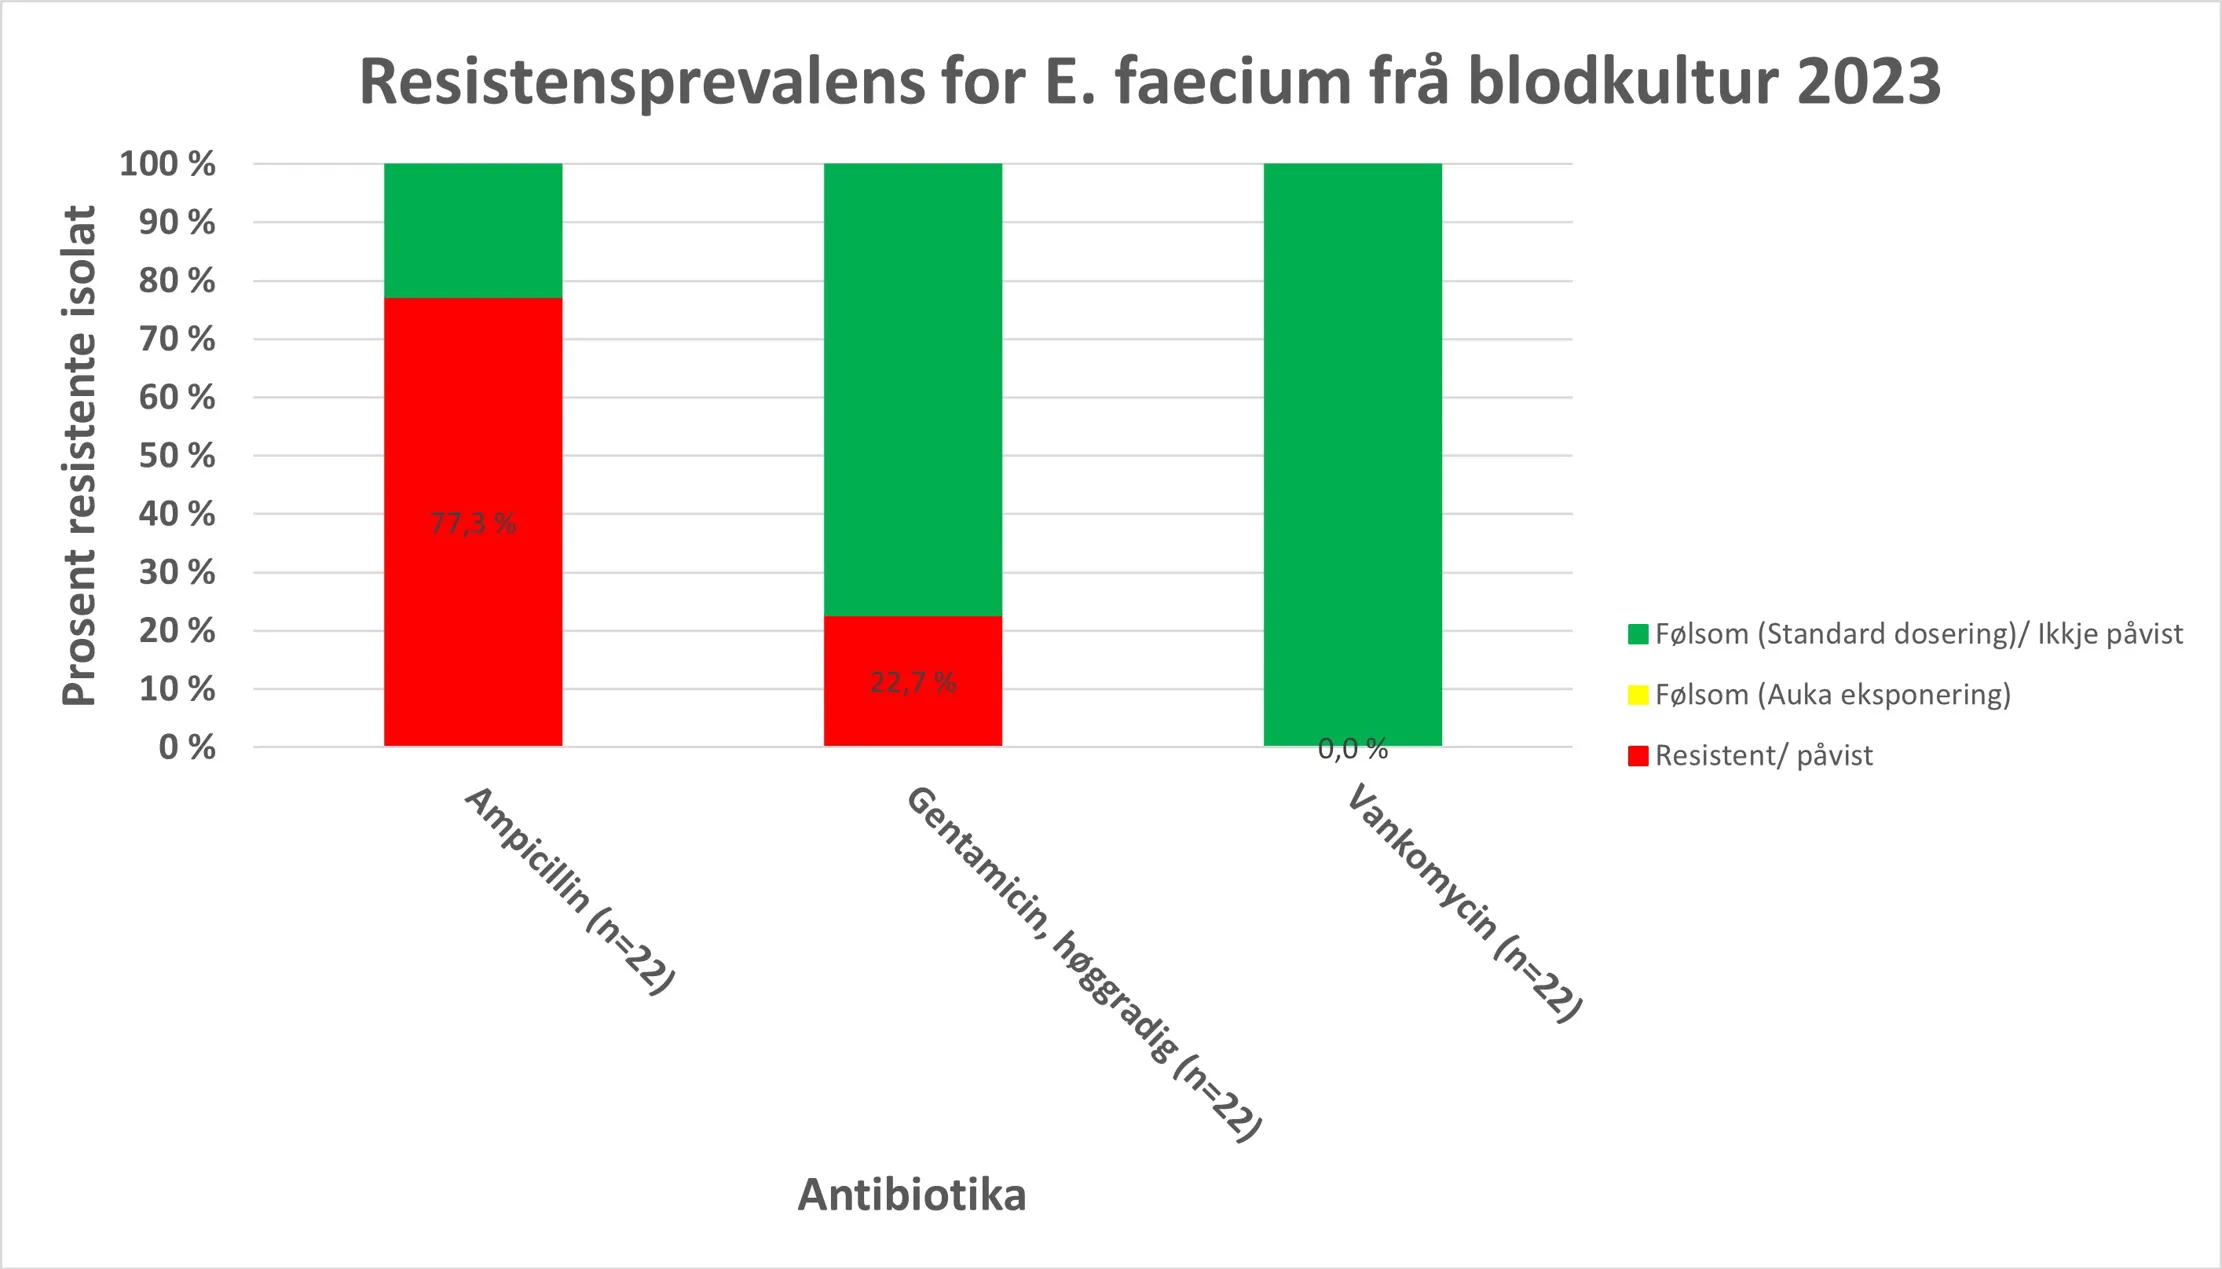 Grafisk fremstilling av resistensdata for E. faecium frå blodkultur for 2022